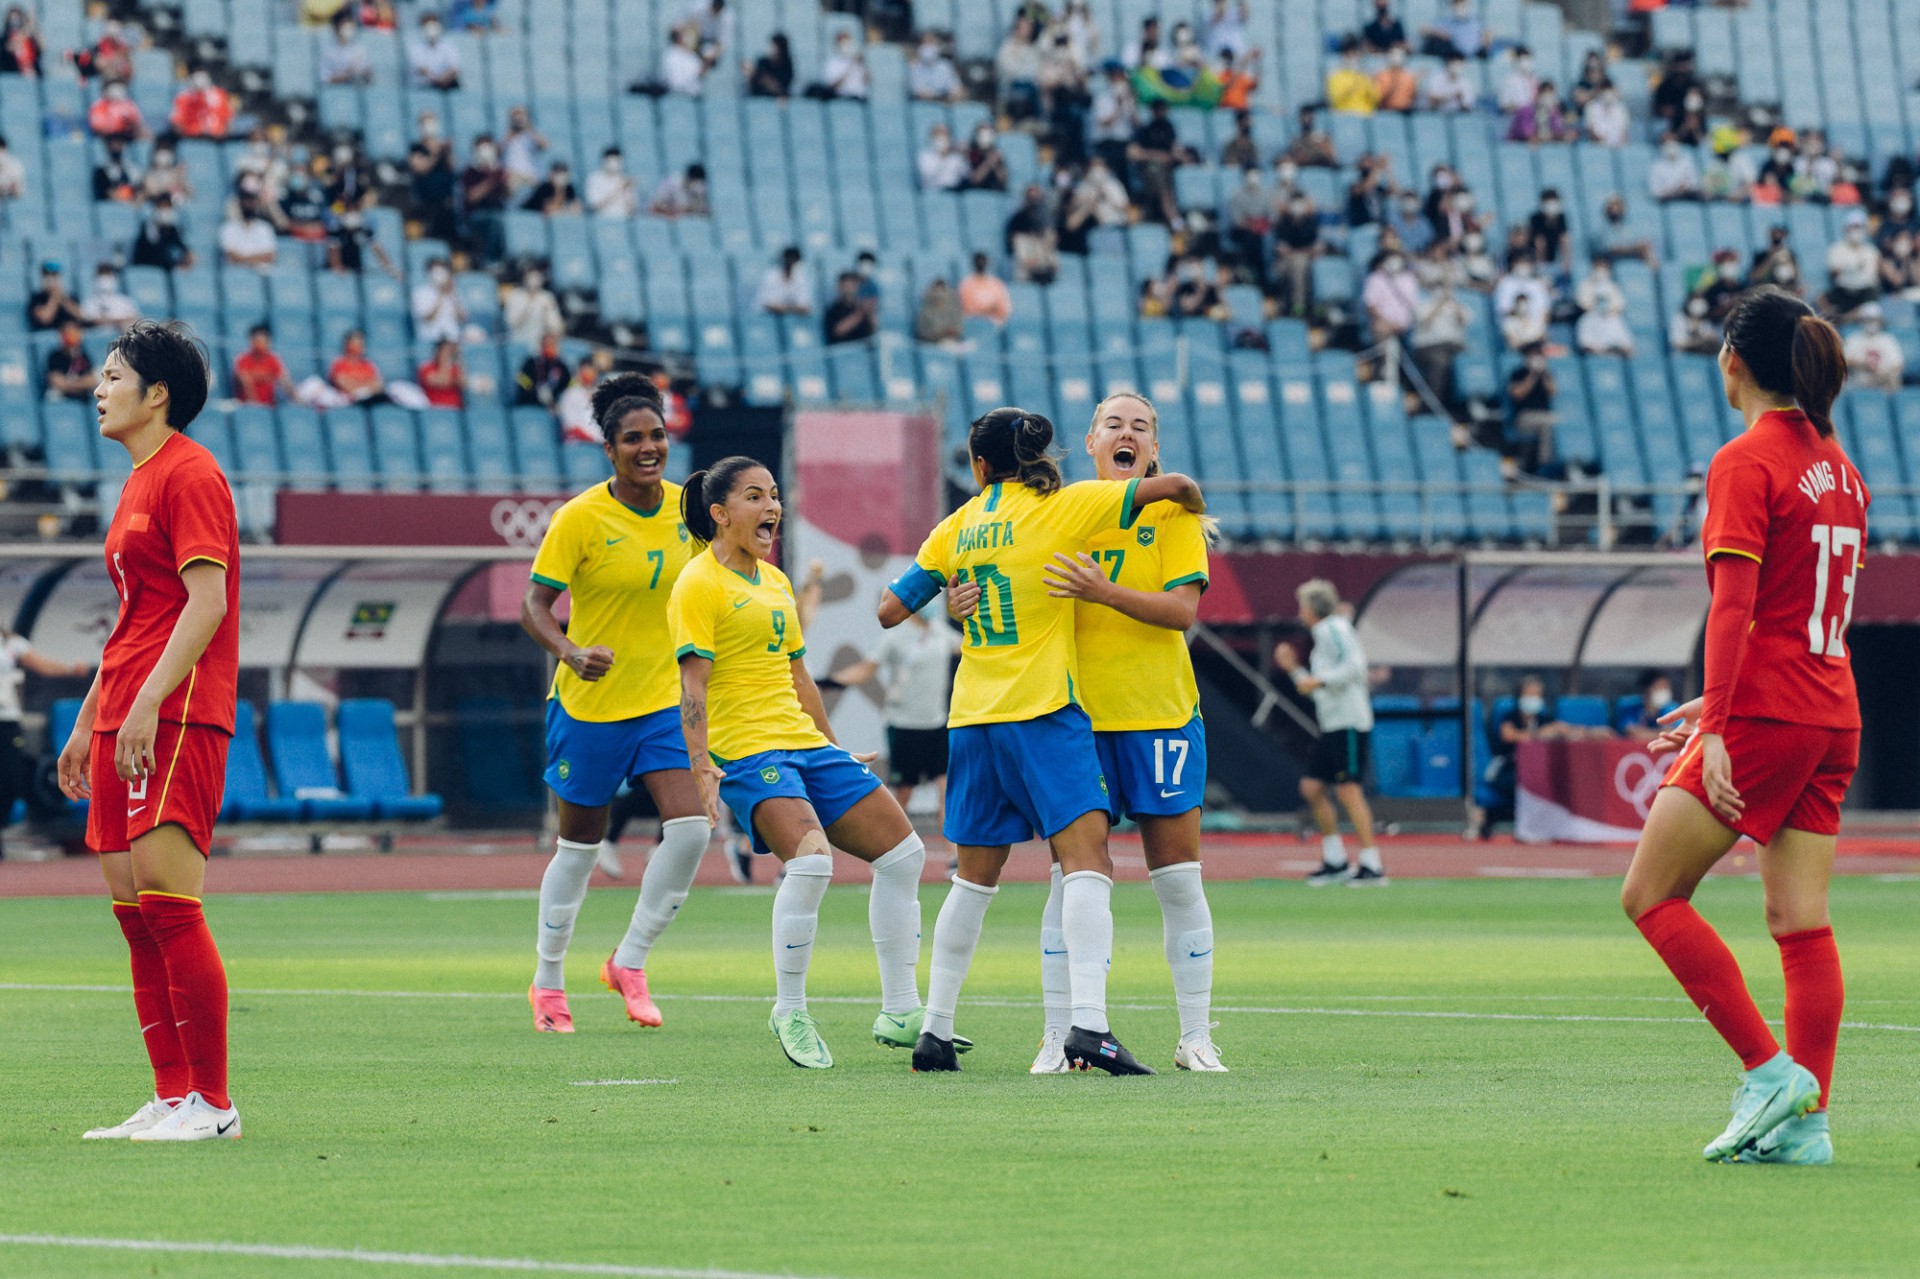 Com show de Marta, Brasil goleia China por 5 a 0 na estreia do futebol  feminino nas Olimpíadas - Jogada - Diário do Nordeste